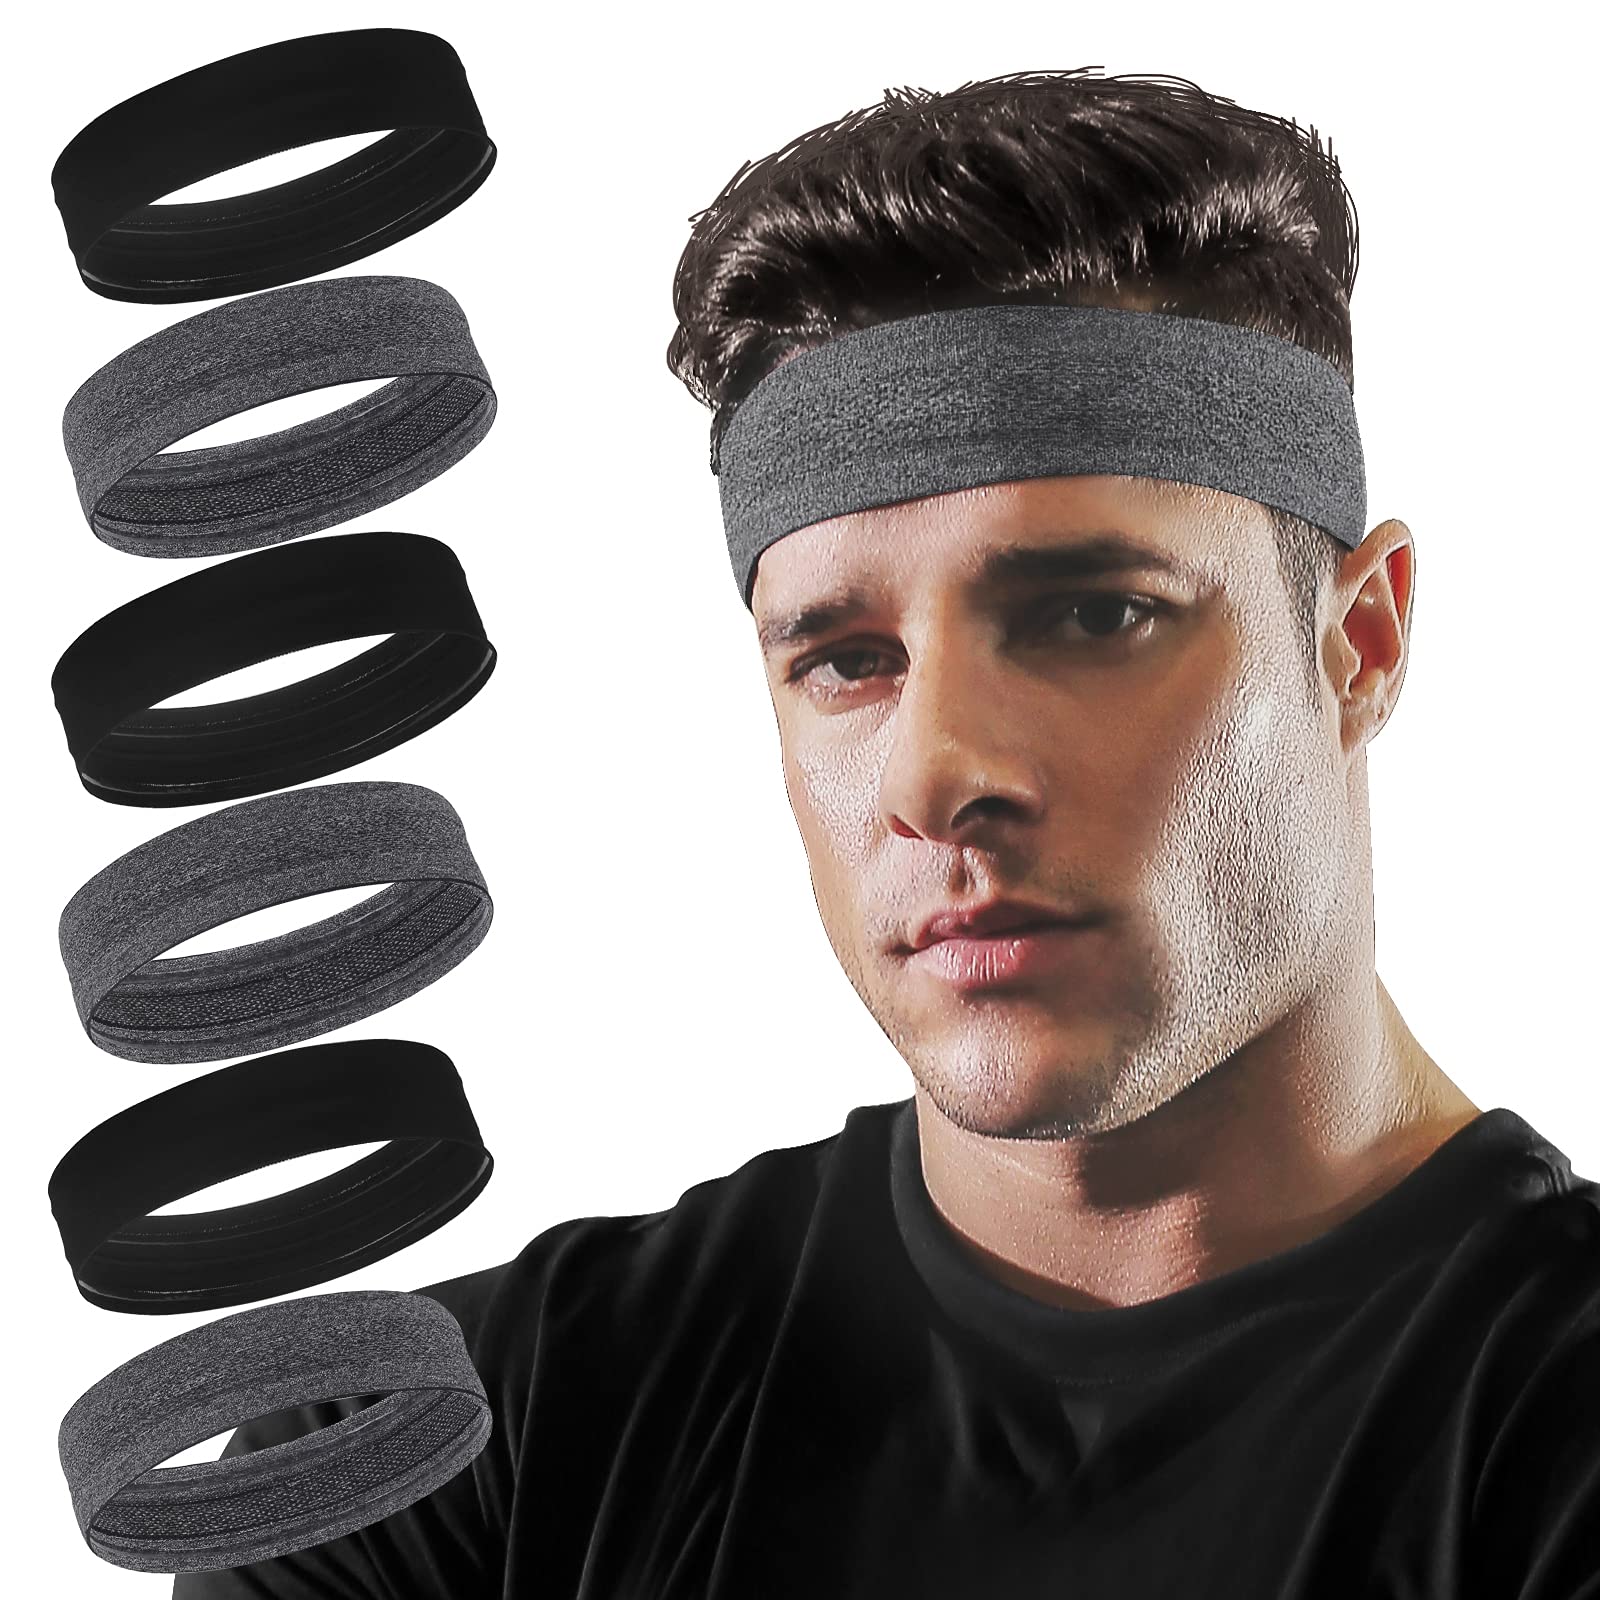 Running Headband Non Slip Workout Sweatbands Adjustable Sports Headbands  Sweat Wicking Headbands for Short Hair Women, Headbands -  Canada